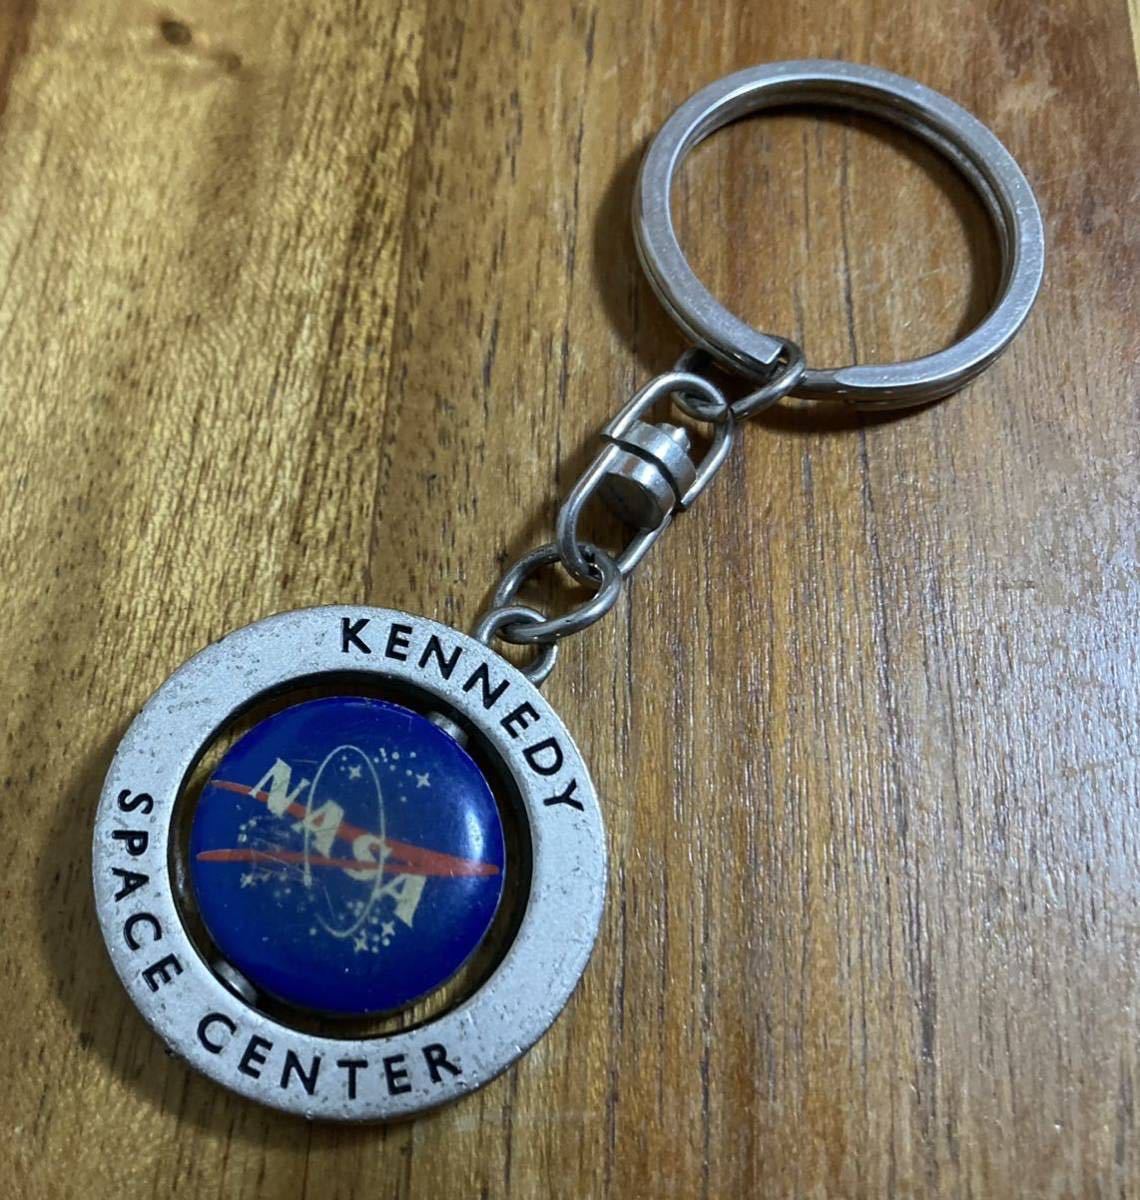  Showa Retro товар NASA Apollo 13 номер kenetis основа центральный. брелок для ключа бесплатная доставка 